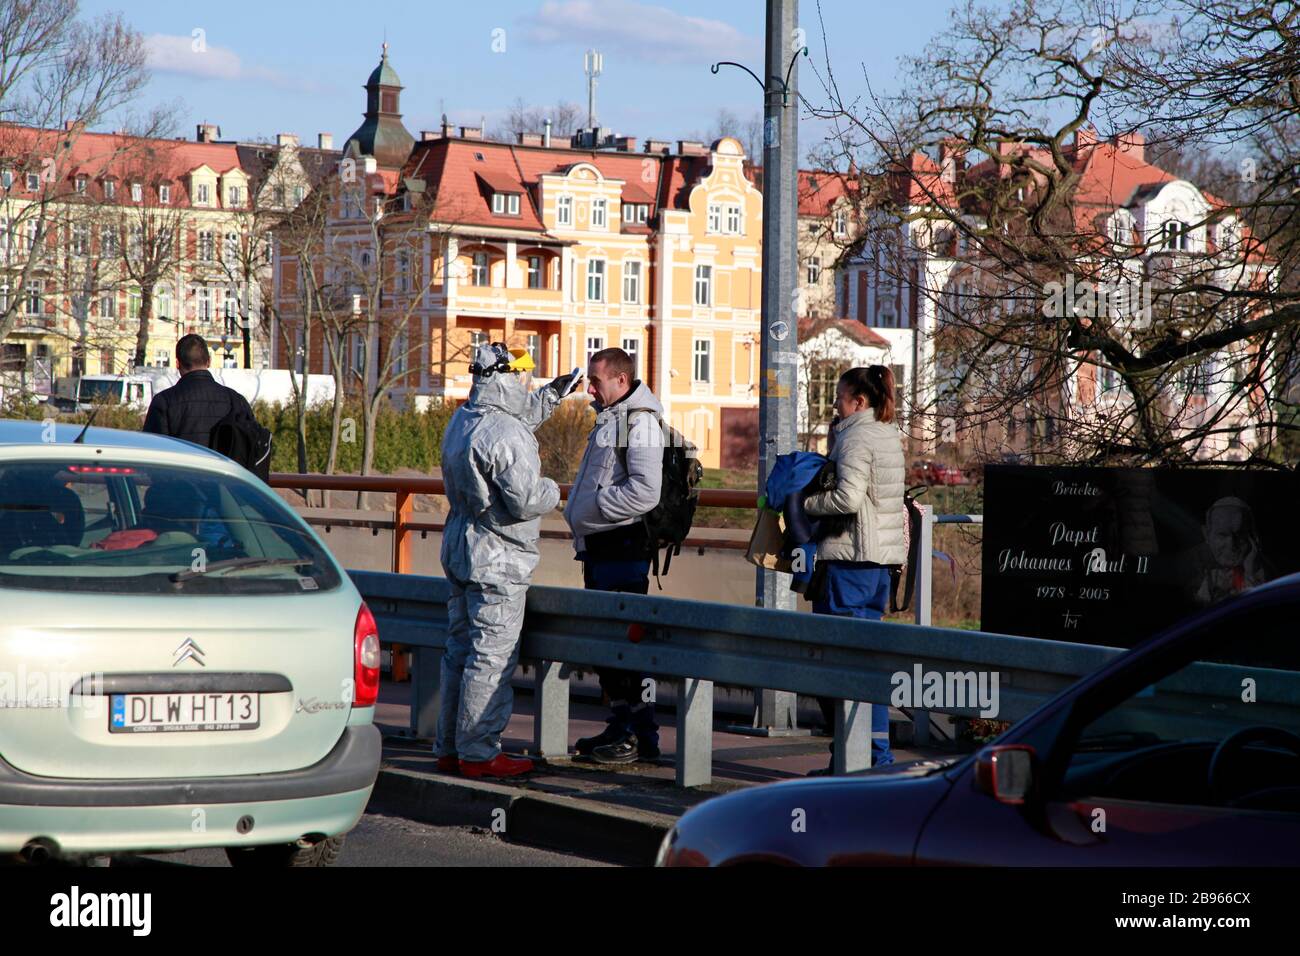 Görlitz Deutschland , Grenze zu Zgorzelec (Polen) anhaltende strenge Corona Kontrollen bei der Einreise nach Polen am 23.3.2020 Stock Photo